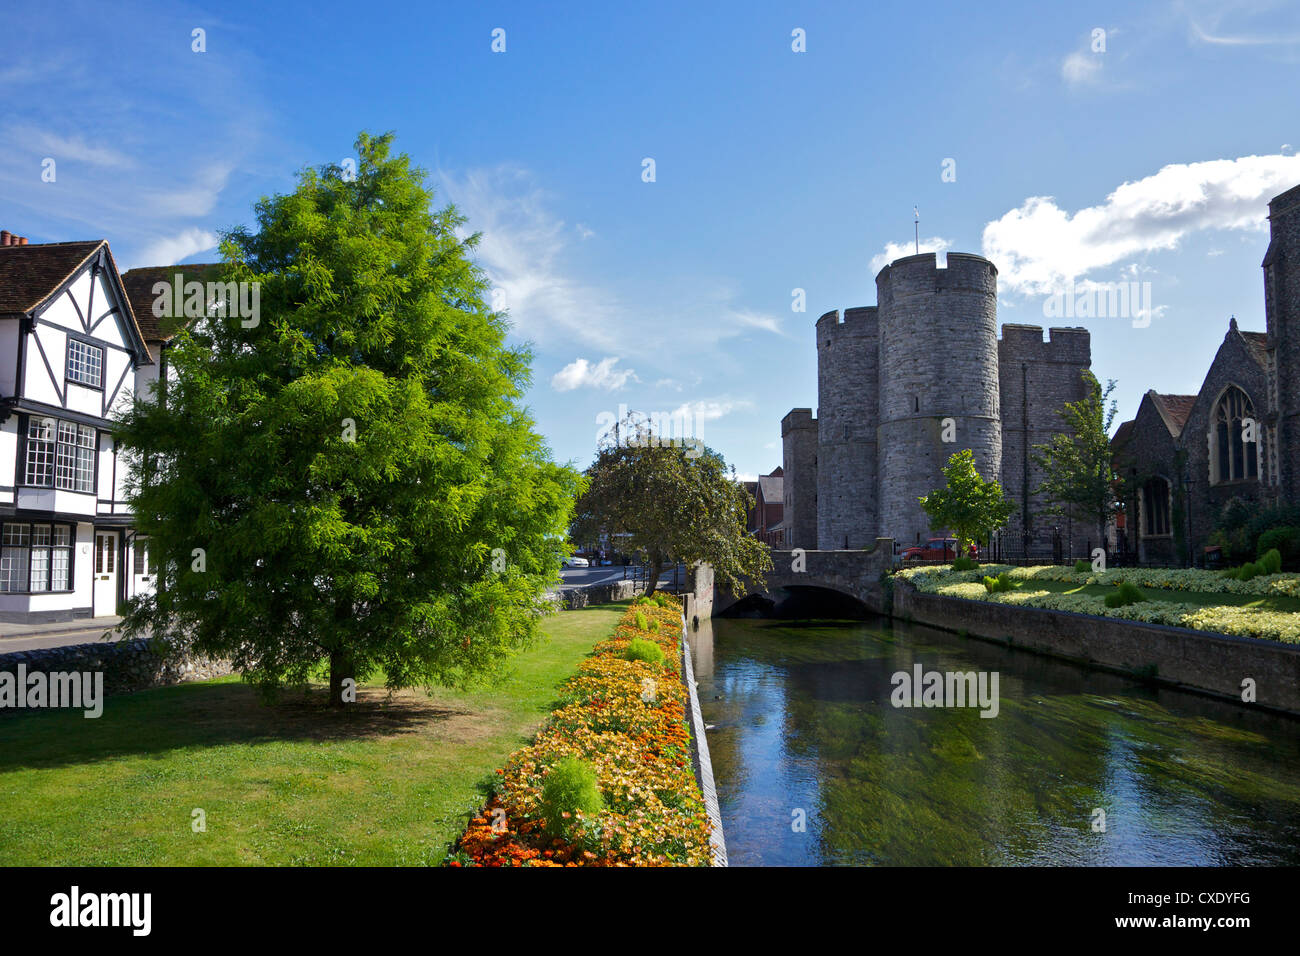 Westgate mittelalterliche Torhaus und Gärten mit Brücke über den Fluss Stour, Canterbury, Kent, England, Vereinigtes Königreich, Europa Stockfoto